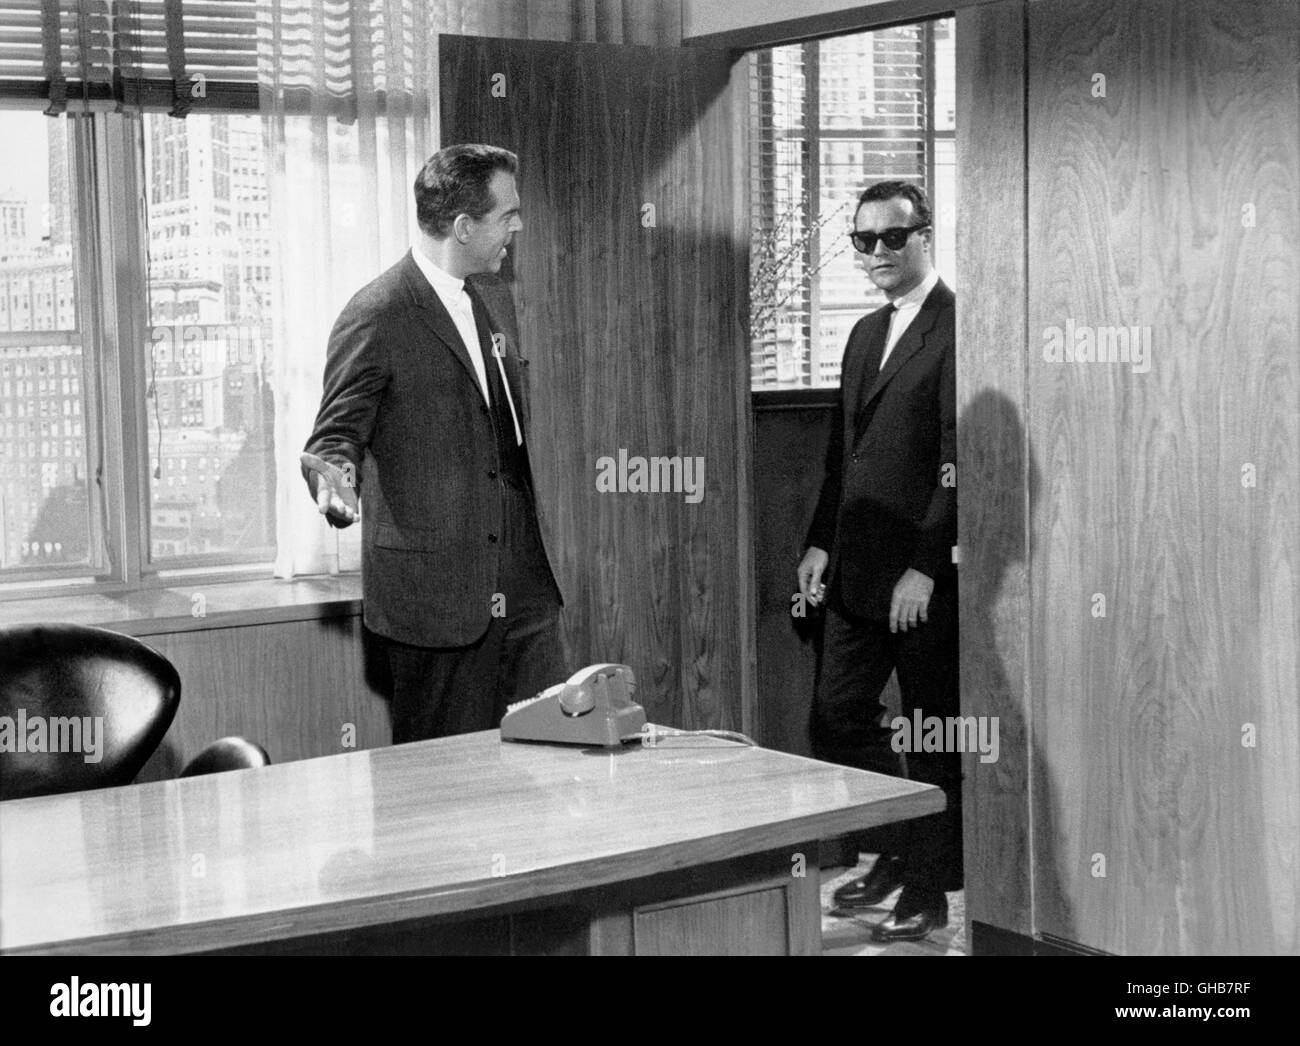 DAS APPARTEMENT Appartamento USA 1960 Billy Wilder volpoca (FRED MACMURRAY) bittet Baxter (JACK LEMMON) in sein Büro. Komödie Regie: Billy Wilder aka. L' appartamento Foto Stock